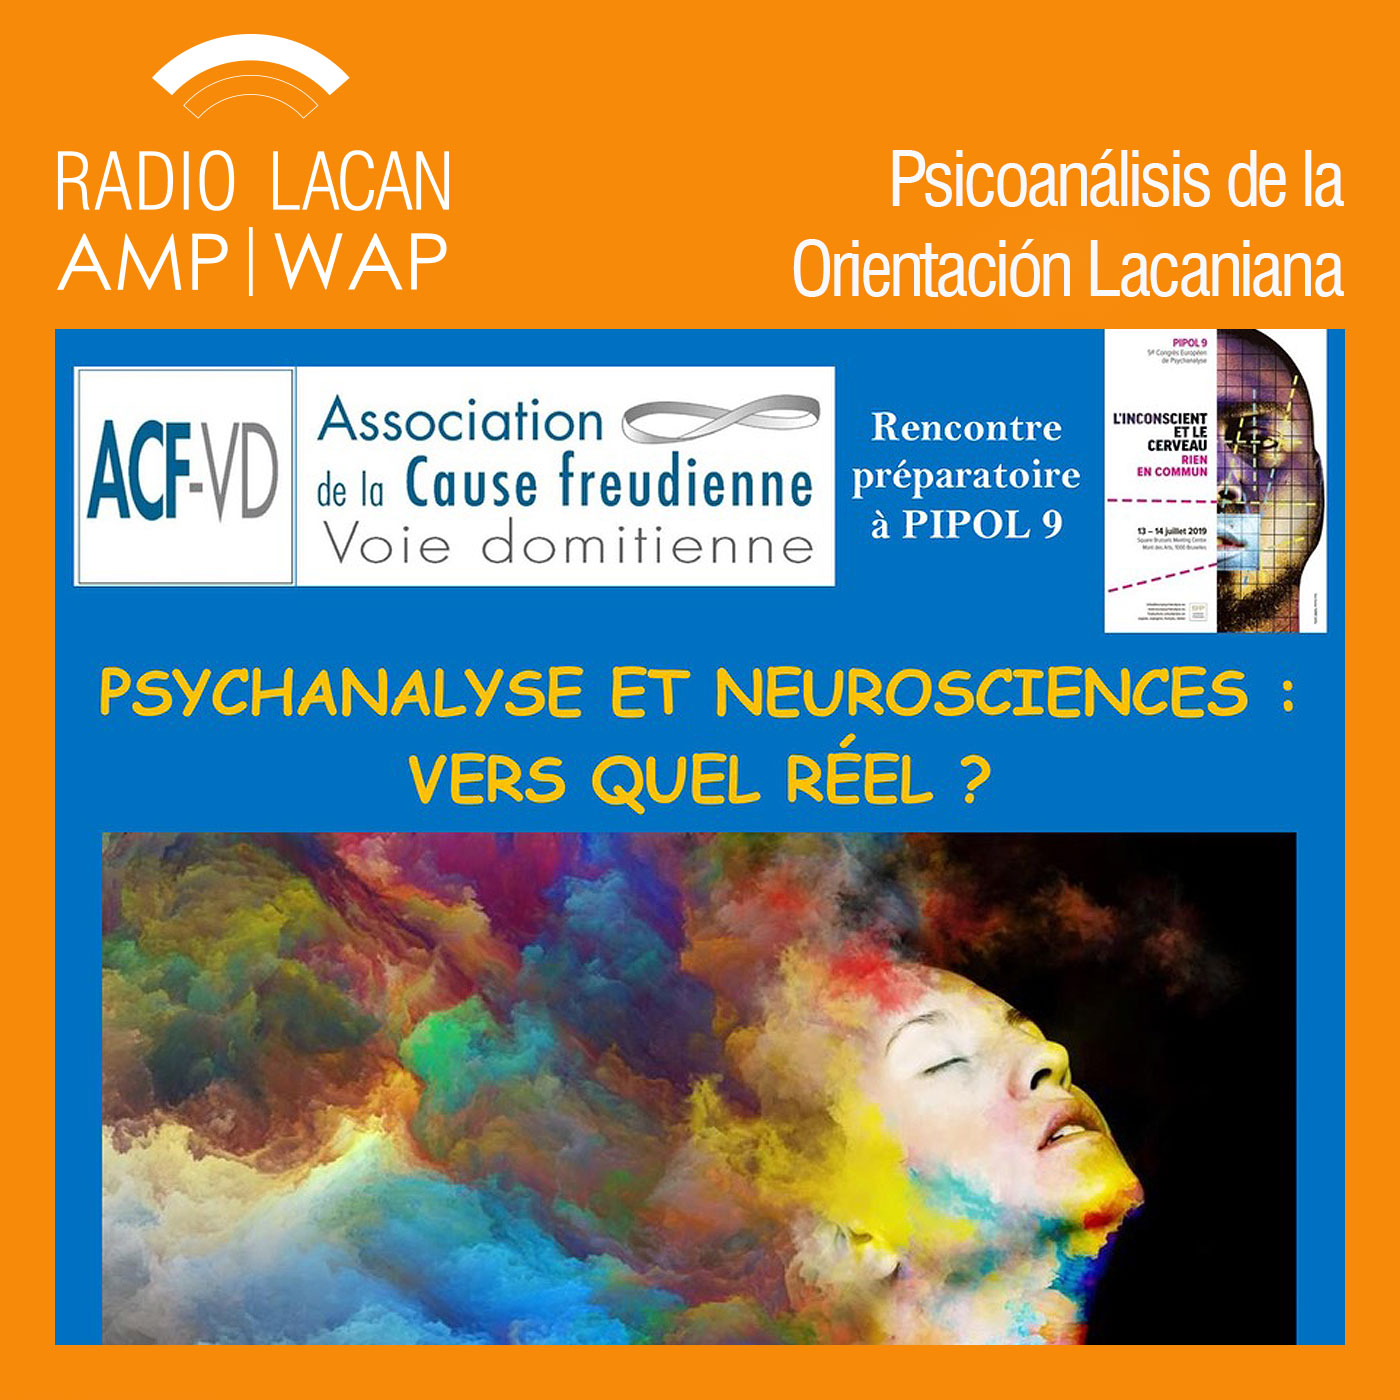 RadioLacan.com | "Hacia PIPOL 9 El inconsciente y el cerebro, nada en común". ACF-Voie domitienne - "Psicoanálisis y Neuroc